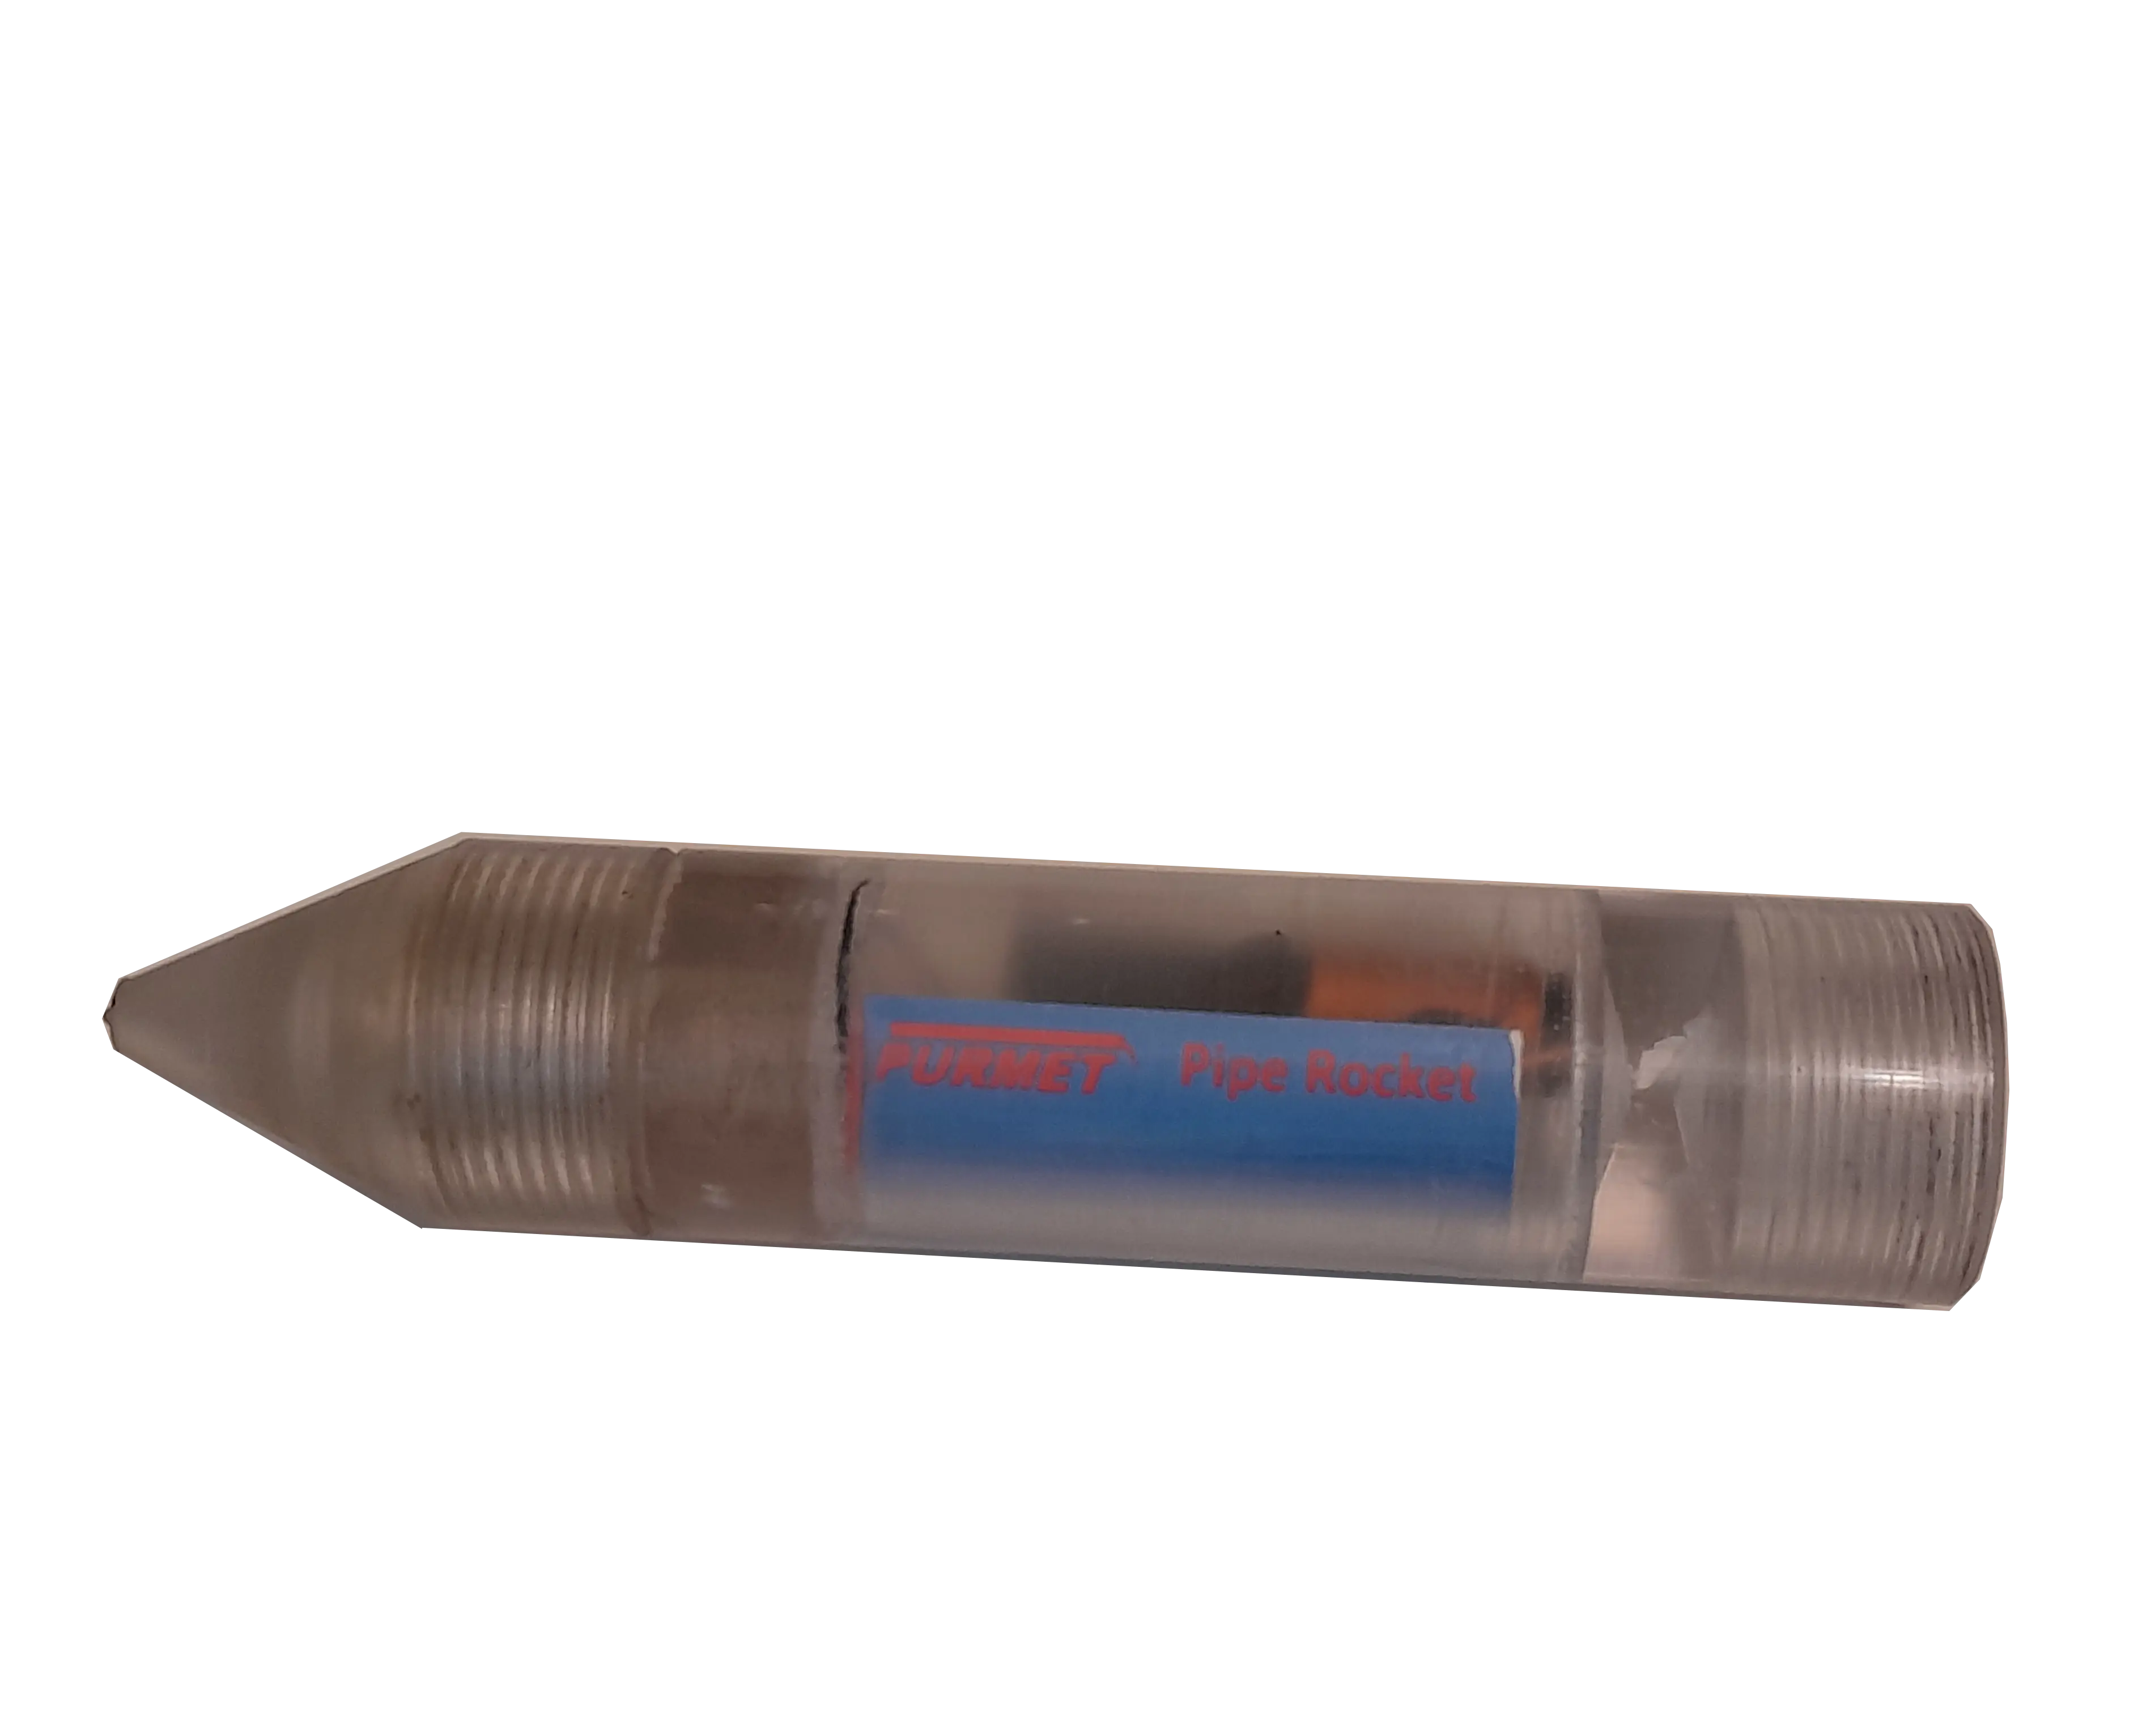 Pipe-Rocket Transmitter